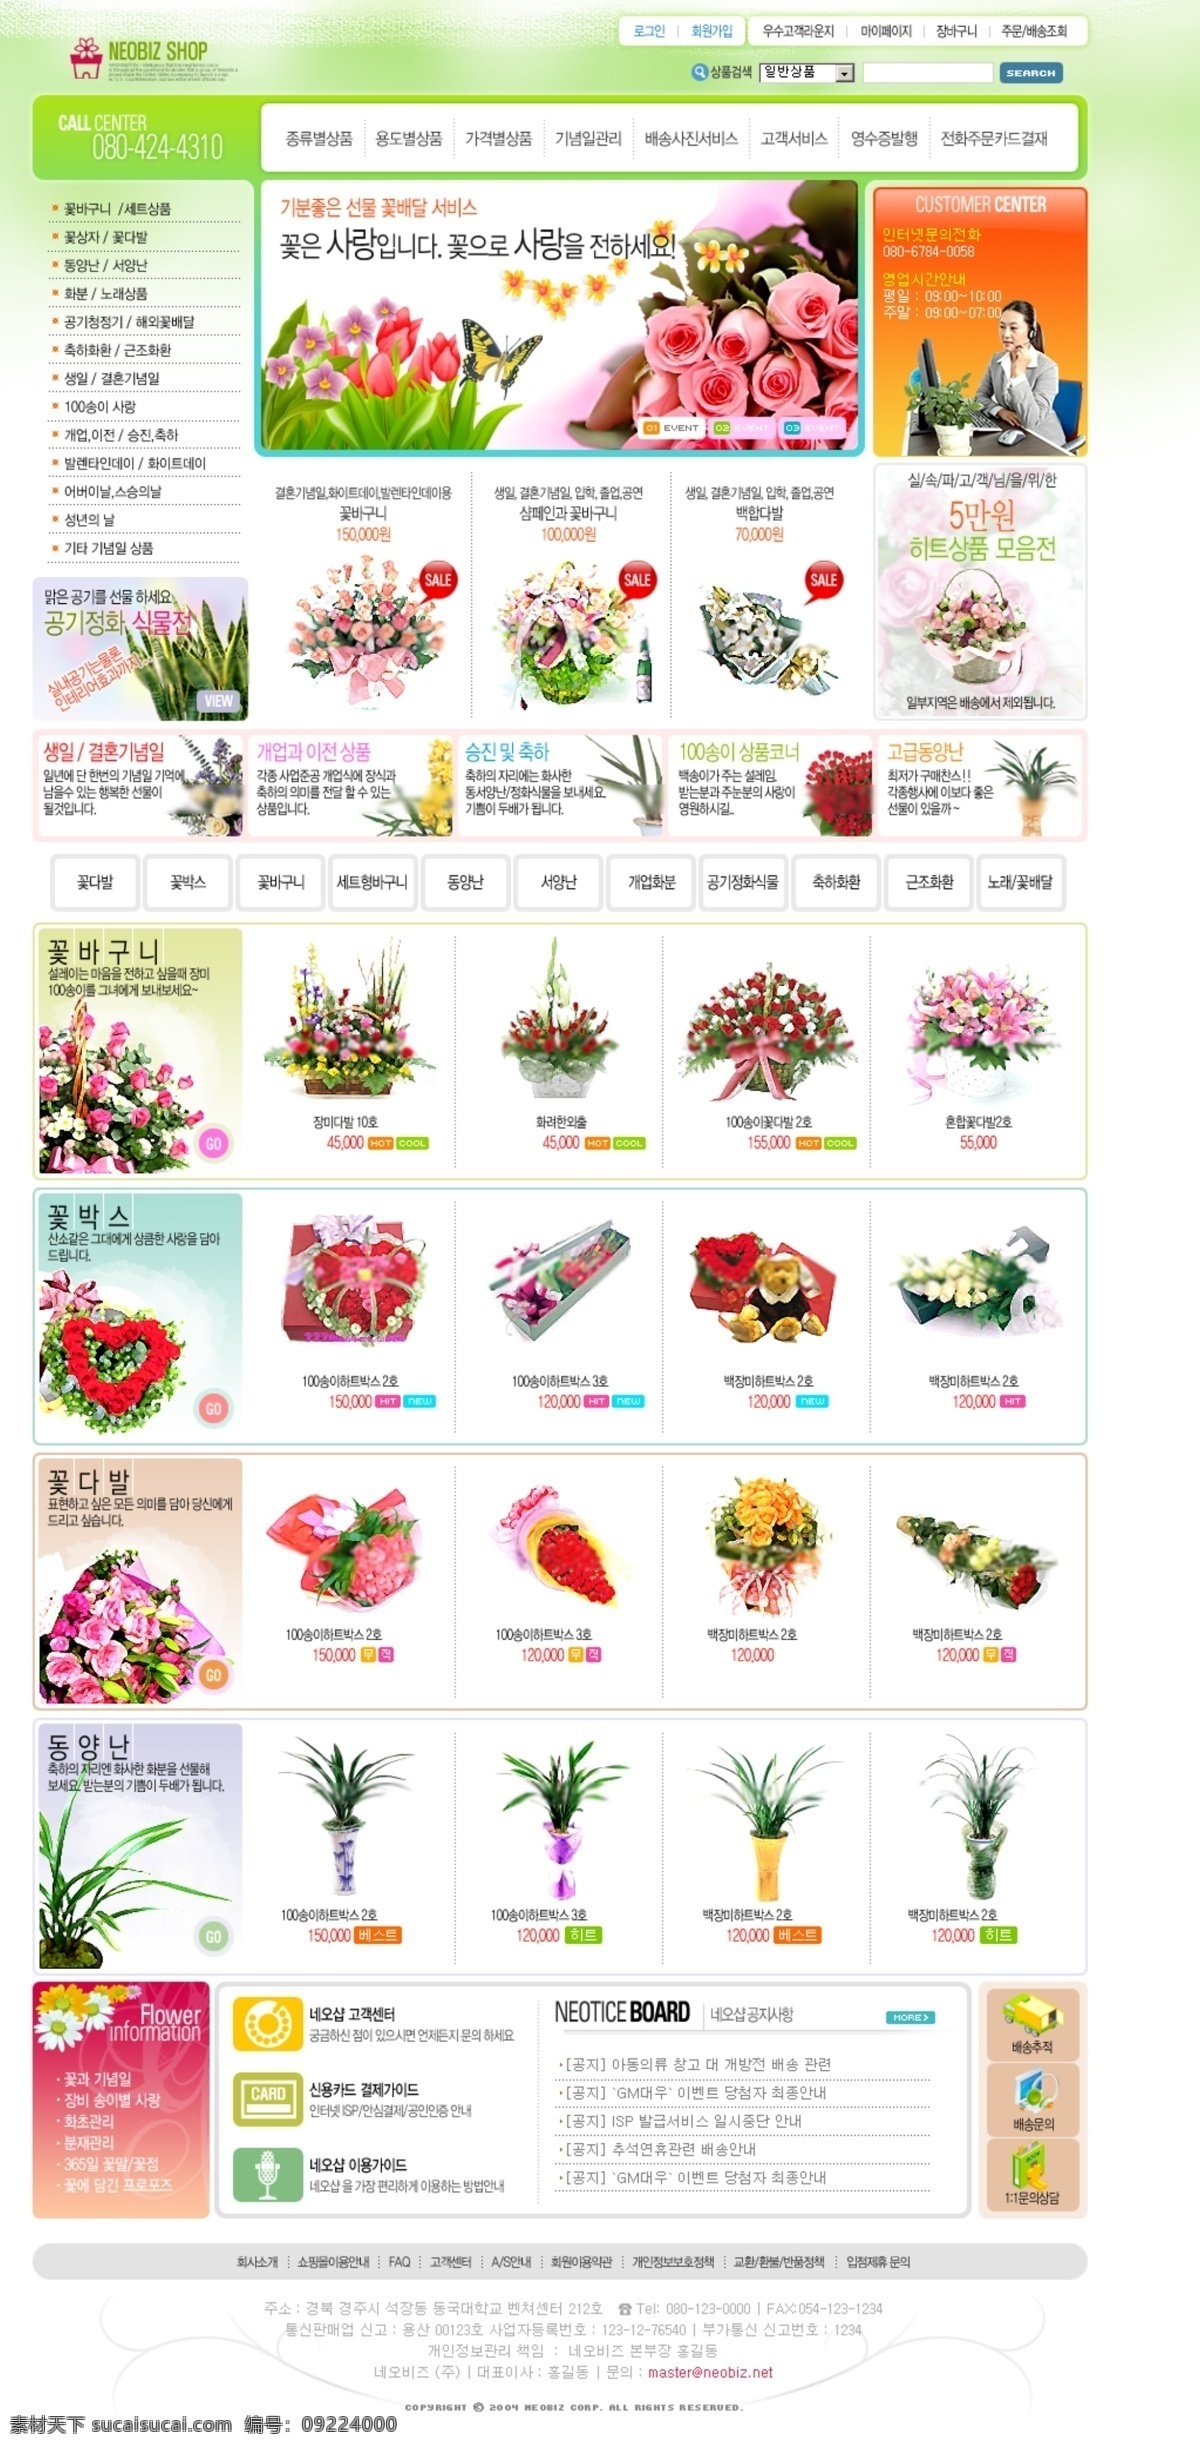 全国 鲜花 网店 界面 韩国 韩国模板 韩国网页模板 模版 网页模板 网站 源文件 网页素材